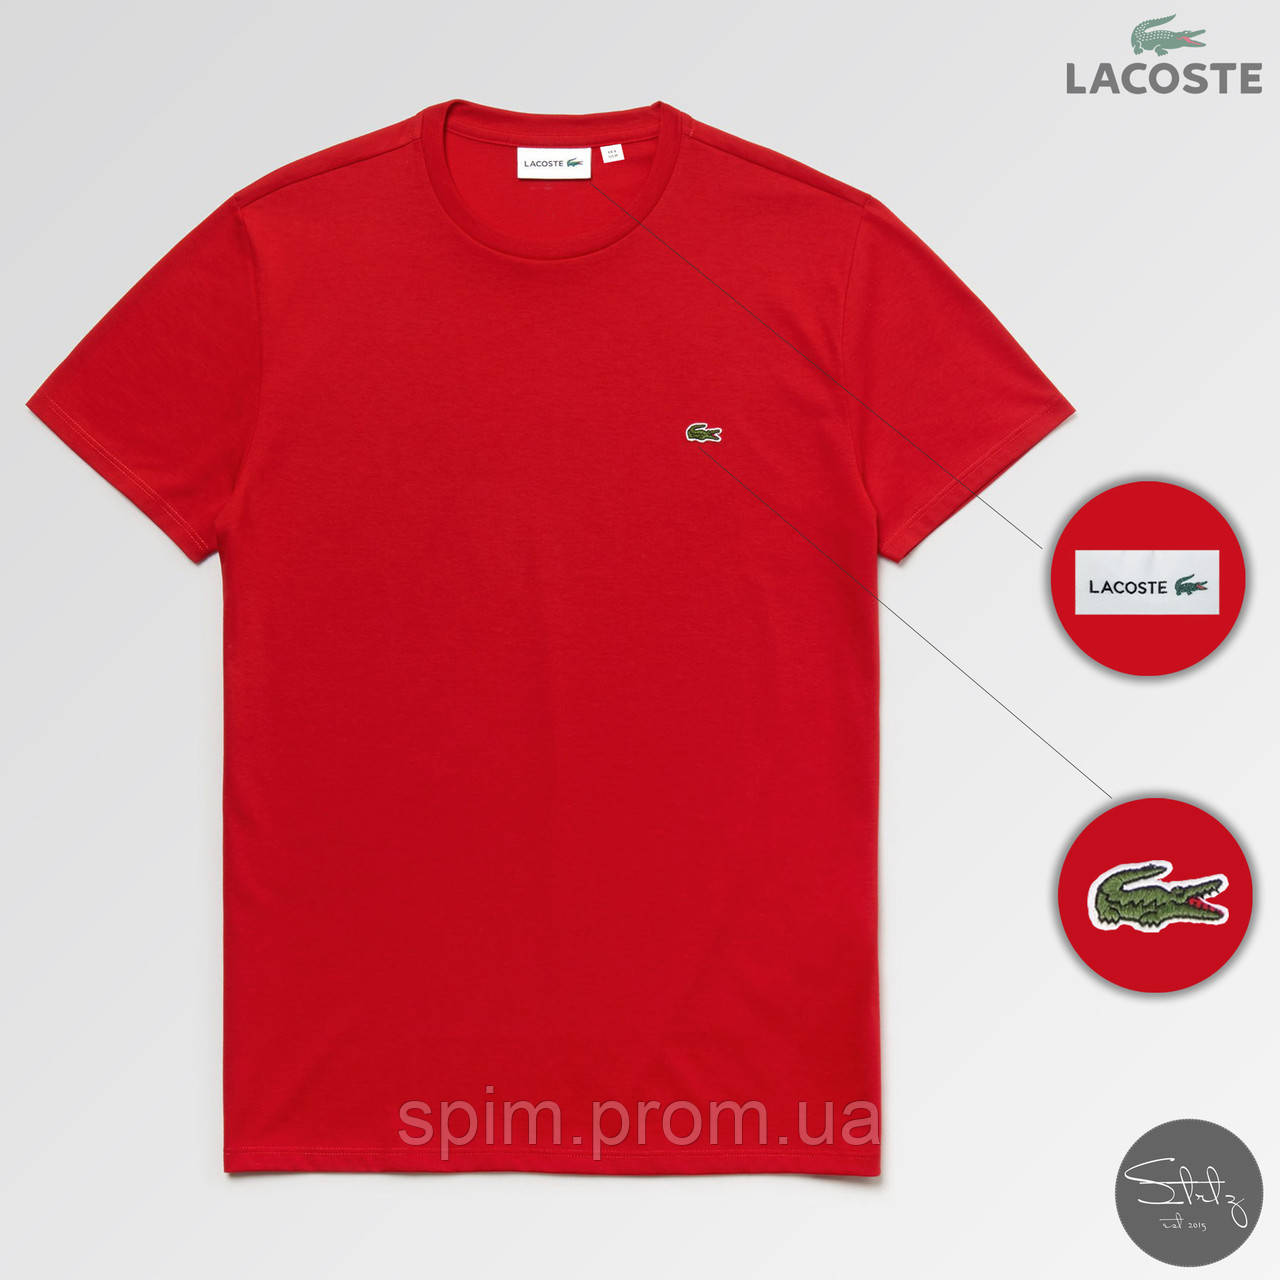 

Мужская футболка стильная Lacoste (реплика) лето. Цвет: красный